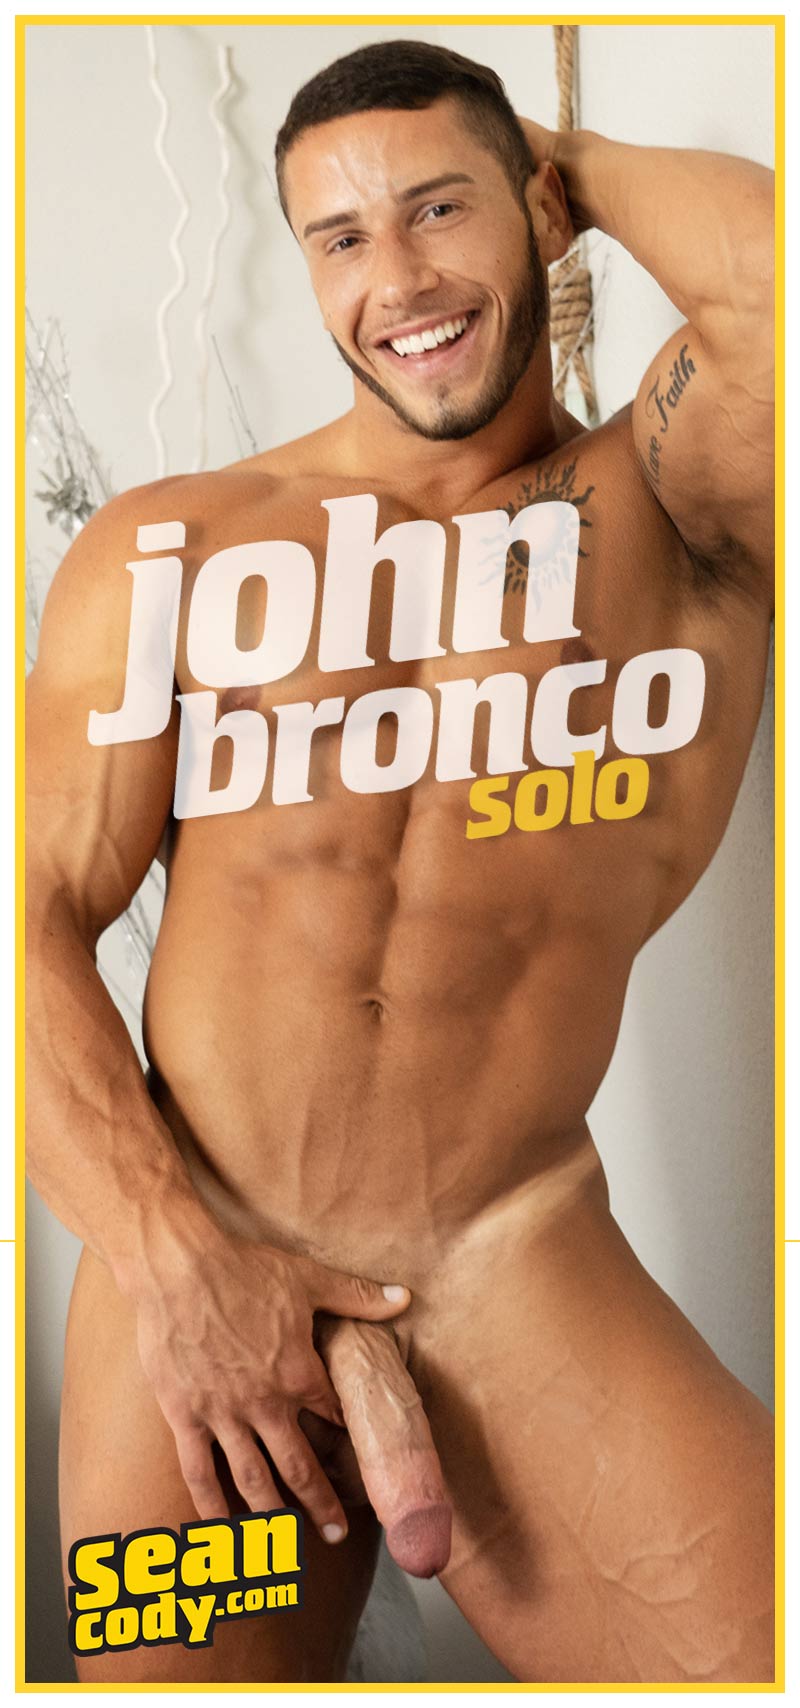 Sean Cody Bodybuilder John Bronco Jerks Off Solo